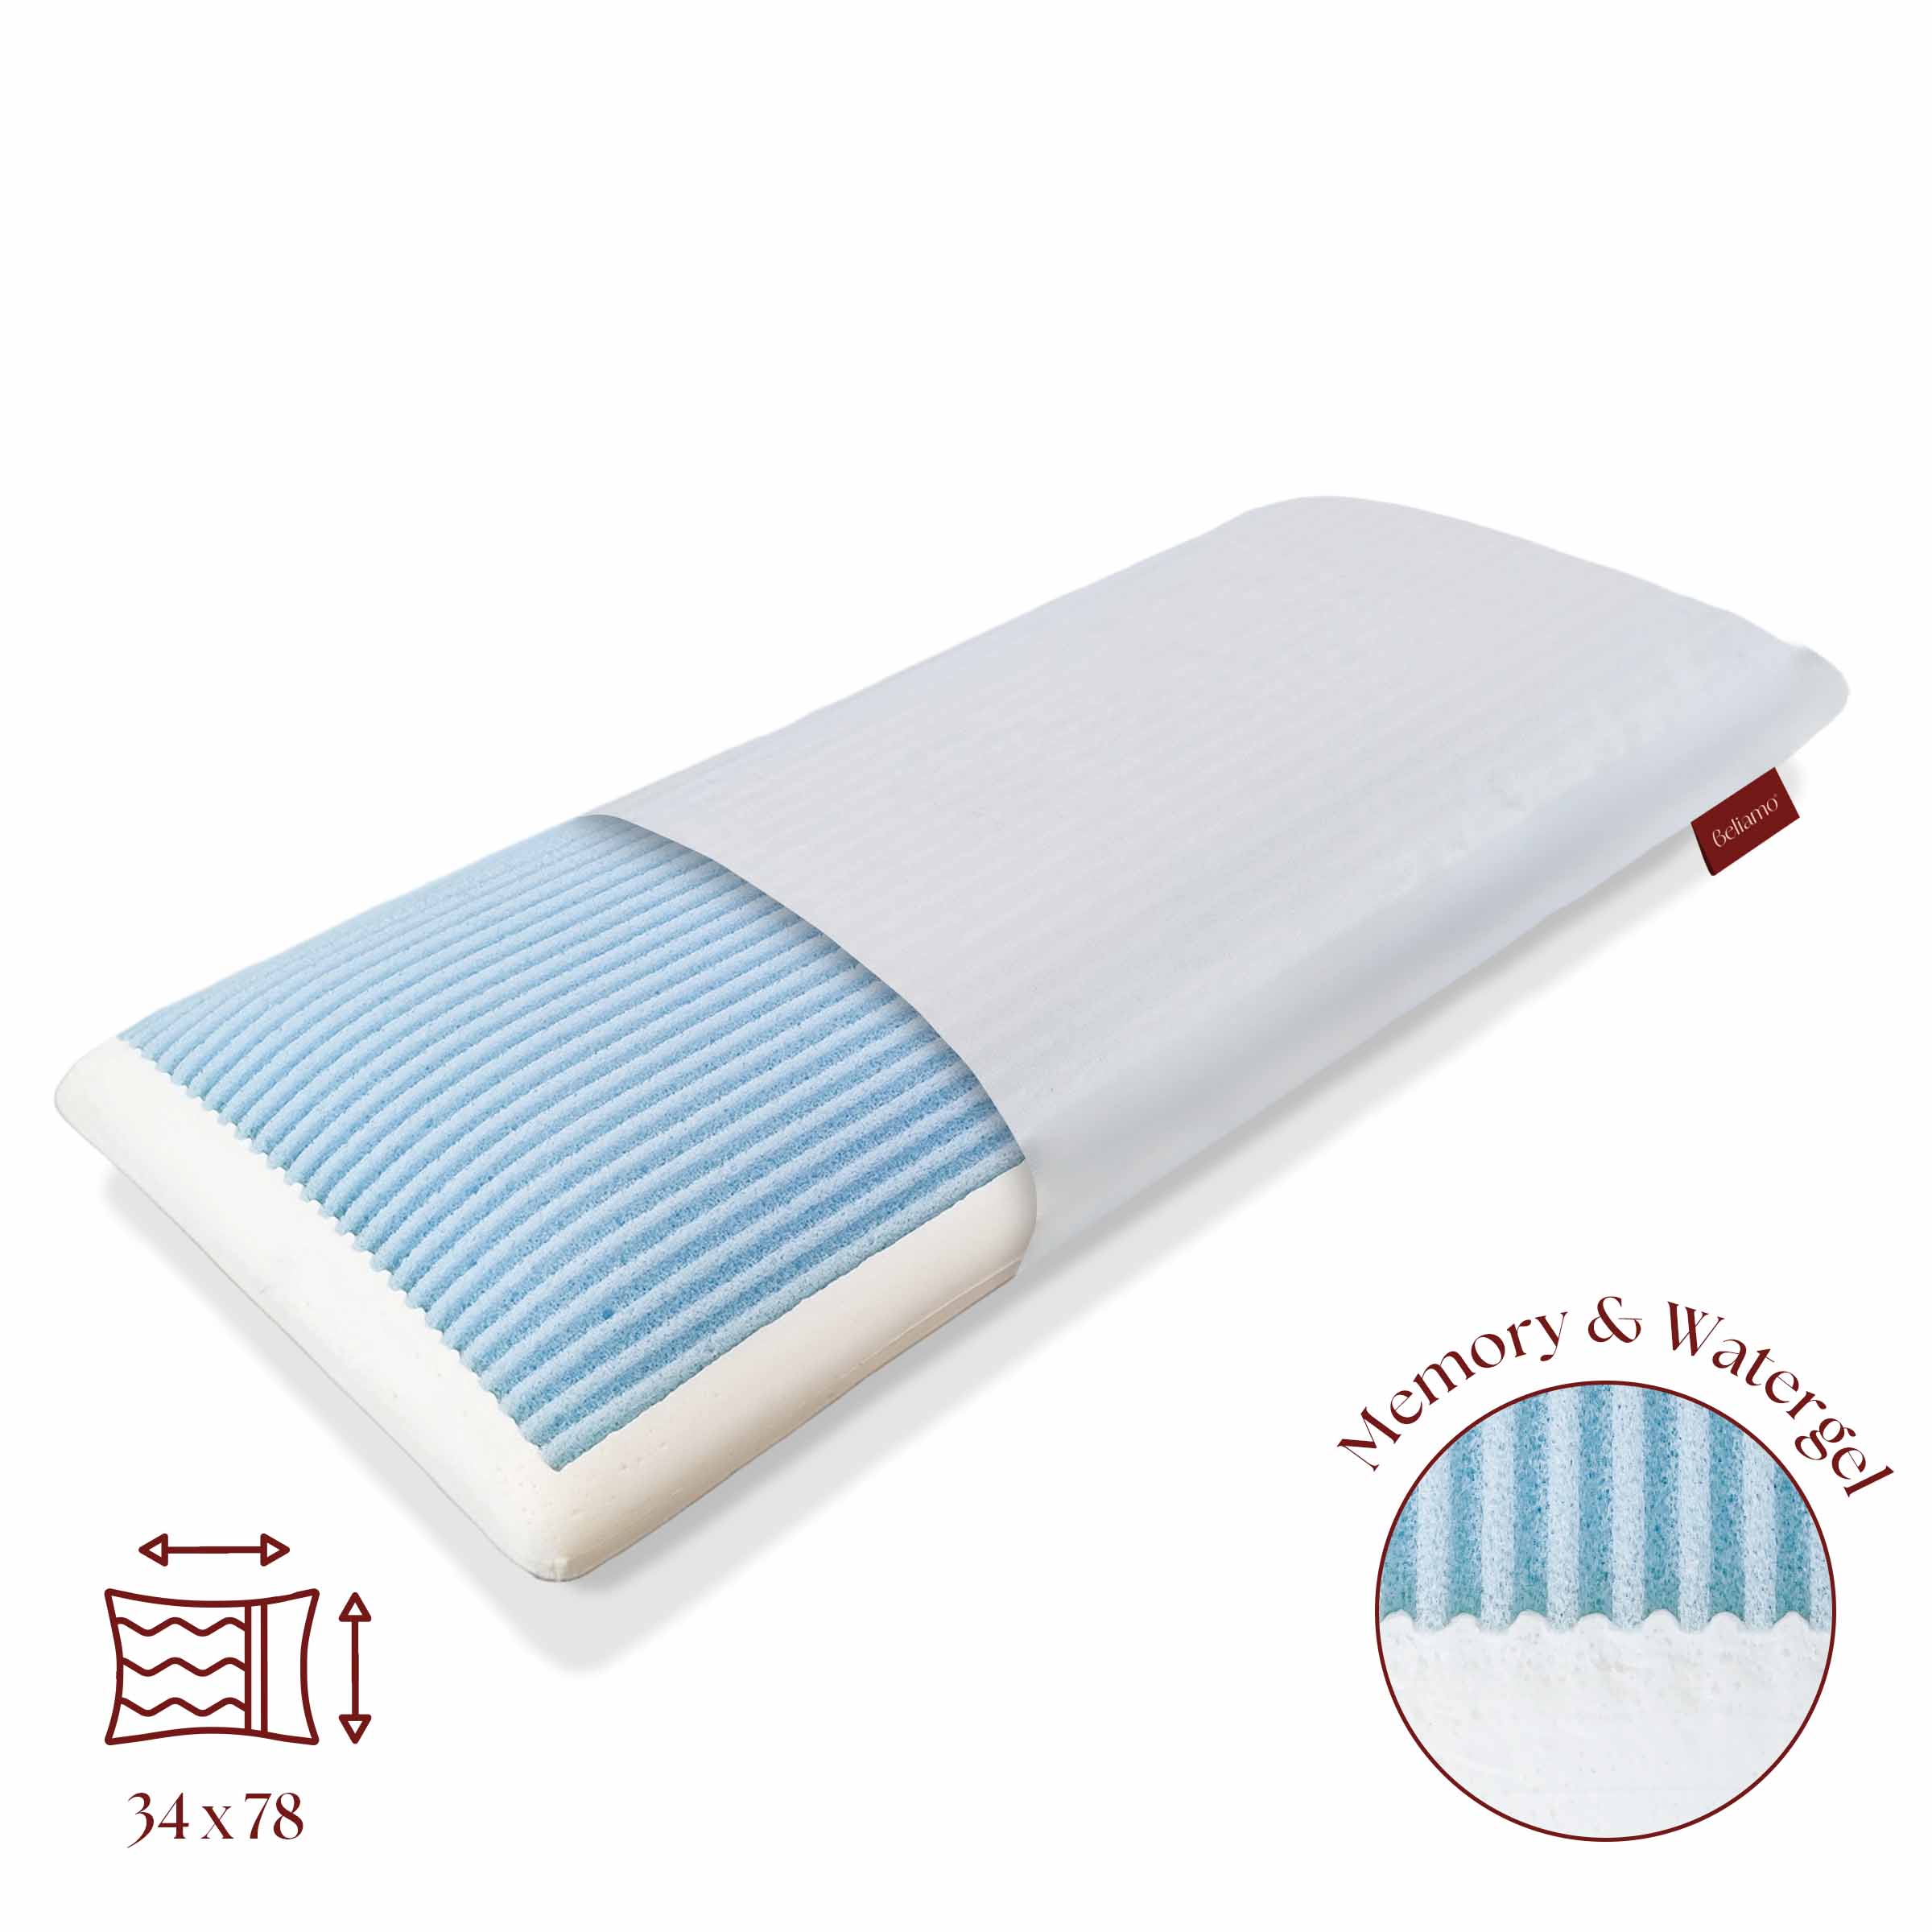 Cuscino LIGNANO LIGHT Memory Foam e Watergel® traspirante - Comfort e freschezza per un riposo ottimale su Beliamo.com